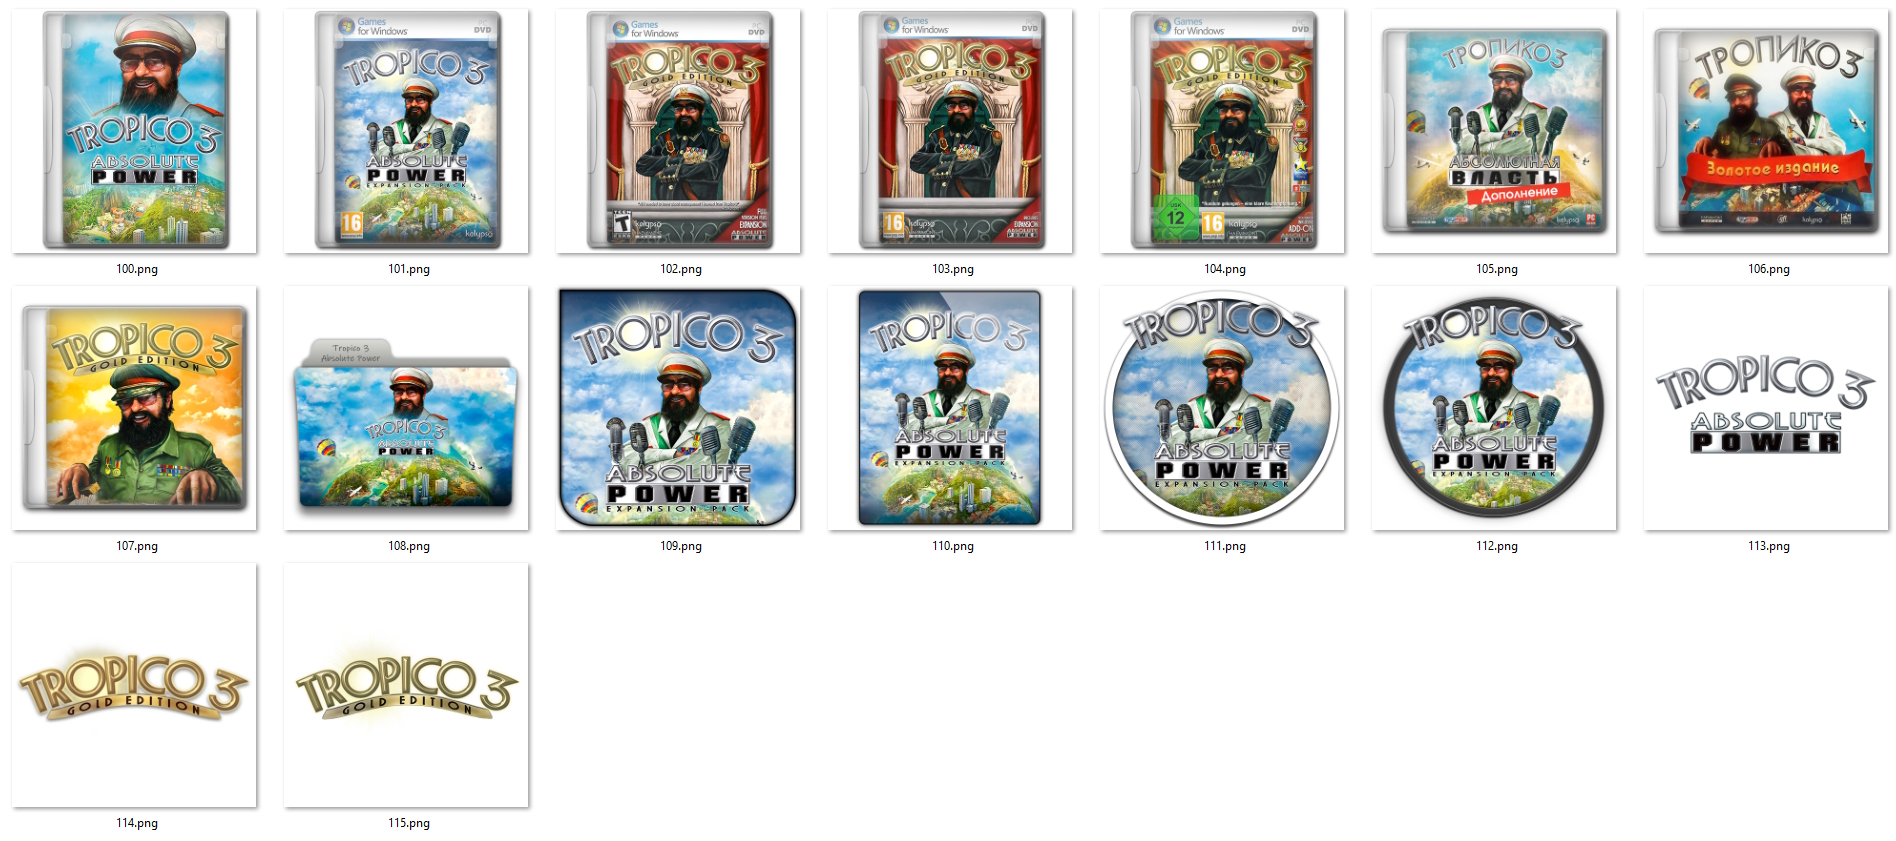 Иконки из набора к игре Тропико 3 Абсолютная Власть